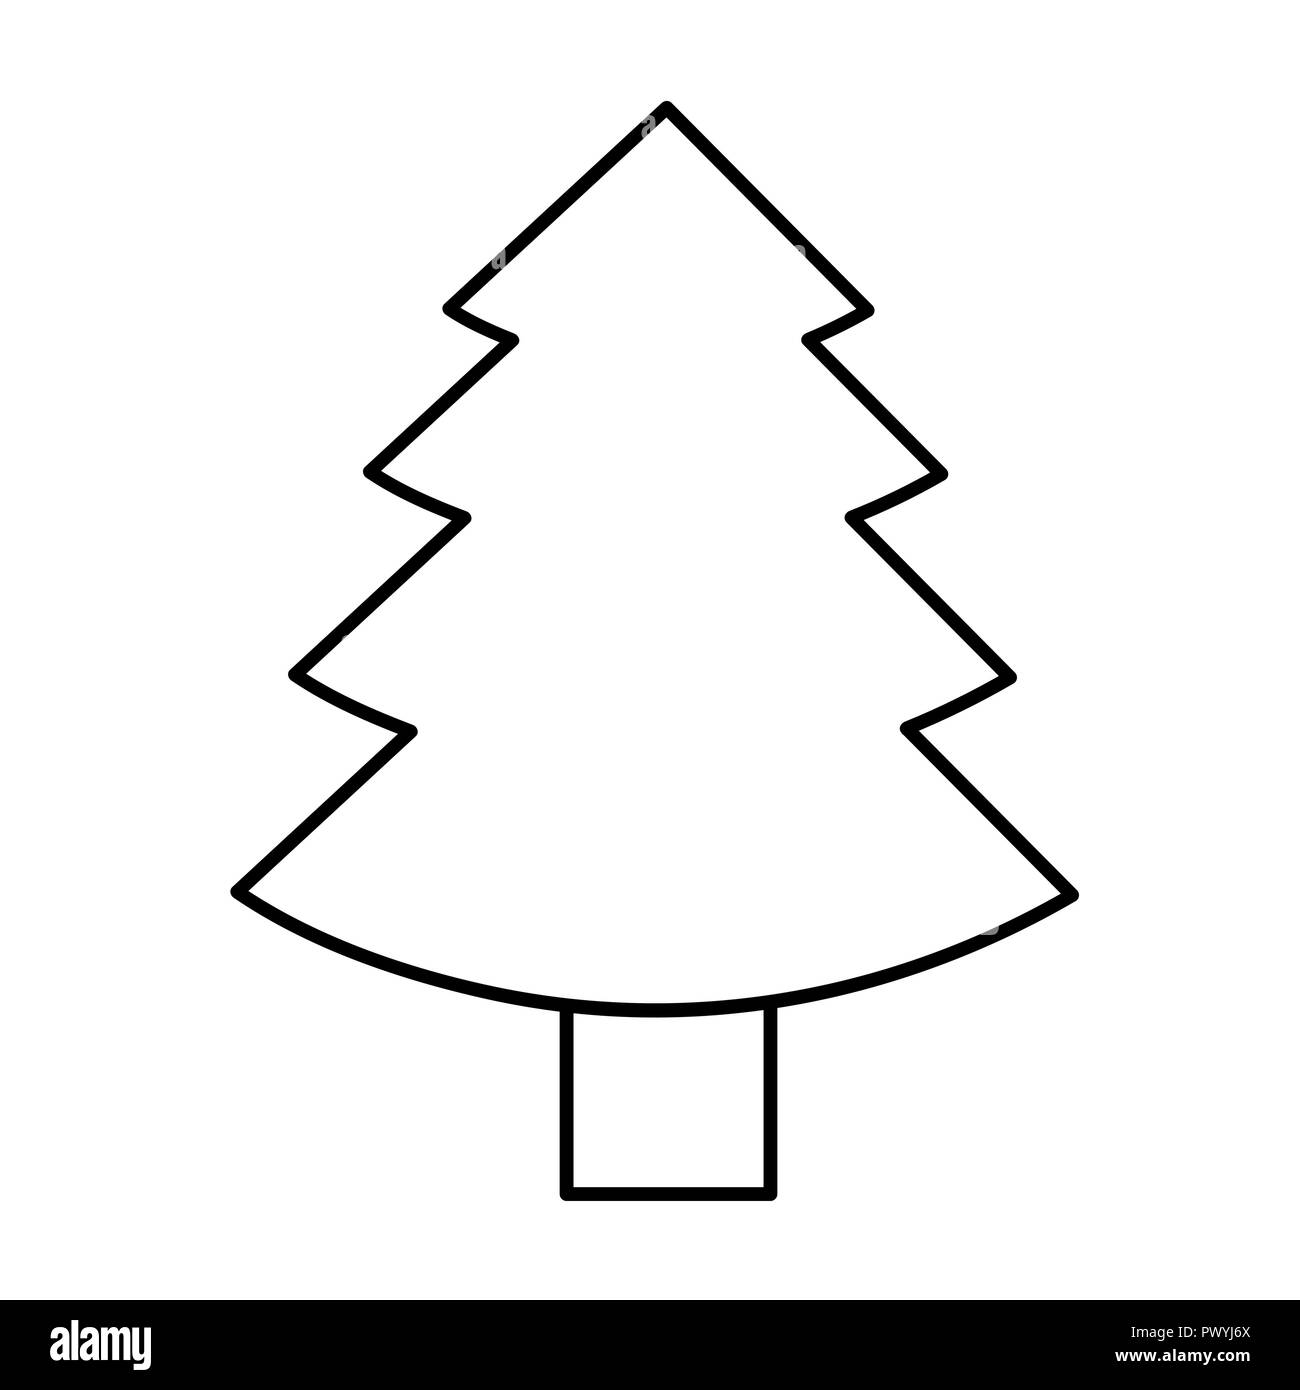 Albero Di Natale Di Abete Icona Semplice Contorno Pittogramma Illustrazione Vettoriale Immagine E Vettoriale Alamy